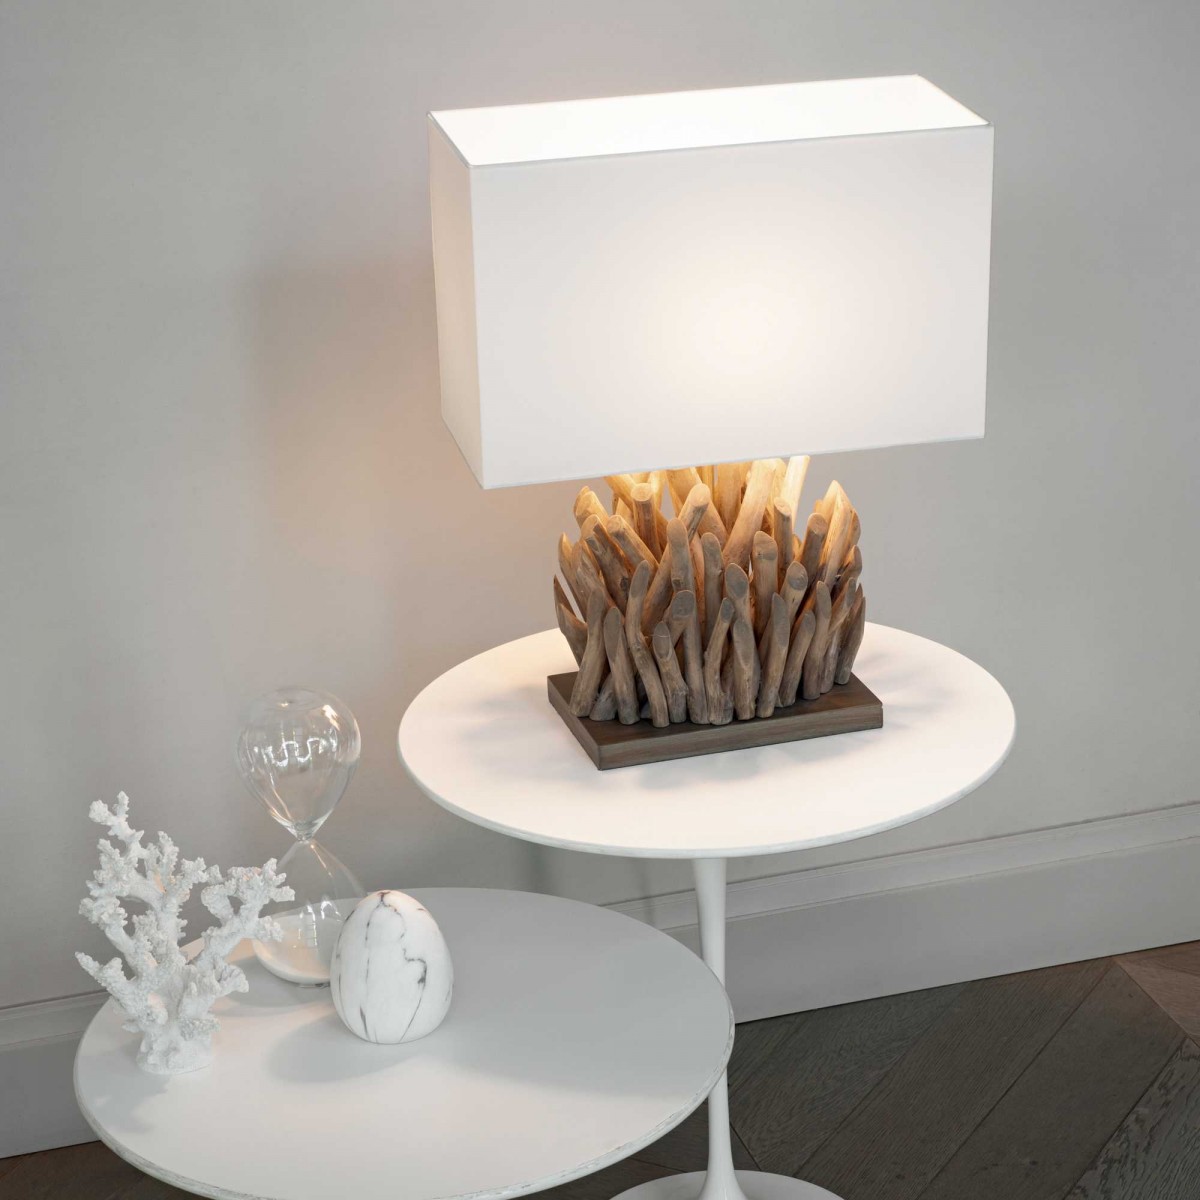 Snell ξύλινο επιτραπέζιο φωτιστικό με κλαδάκια και υφασμάτινο καπέλο σε λευκή απόχρωση 25x17x40 εκ